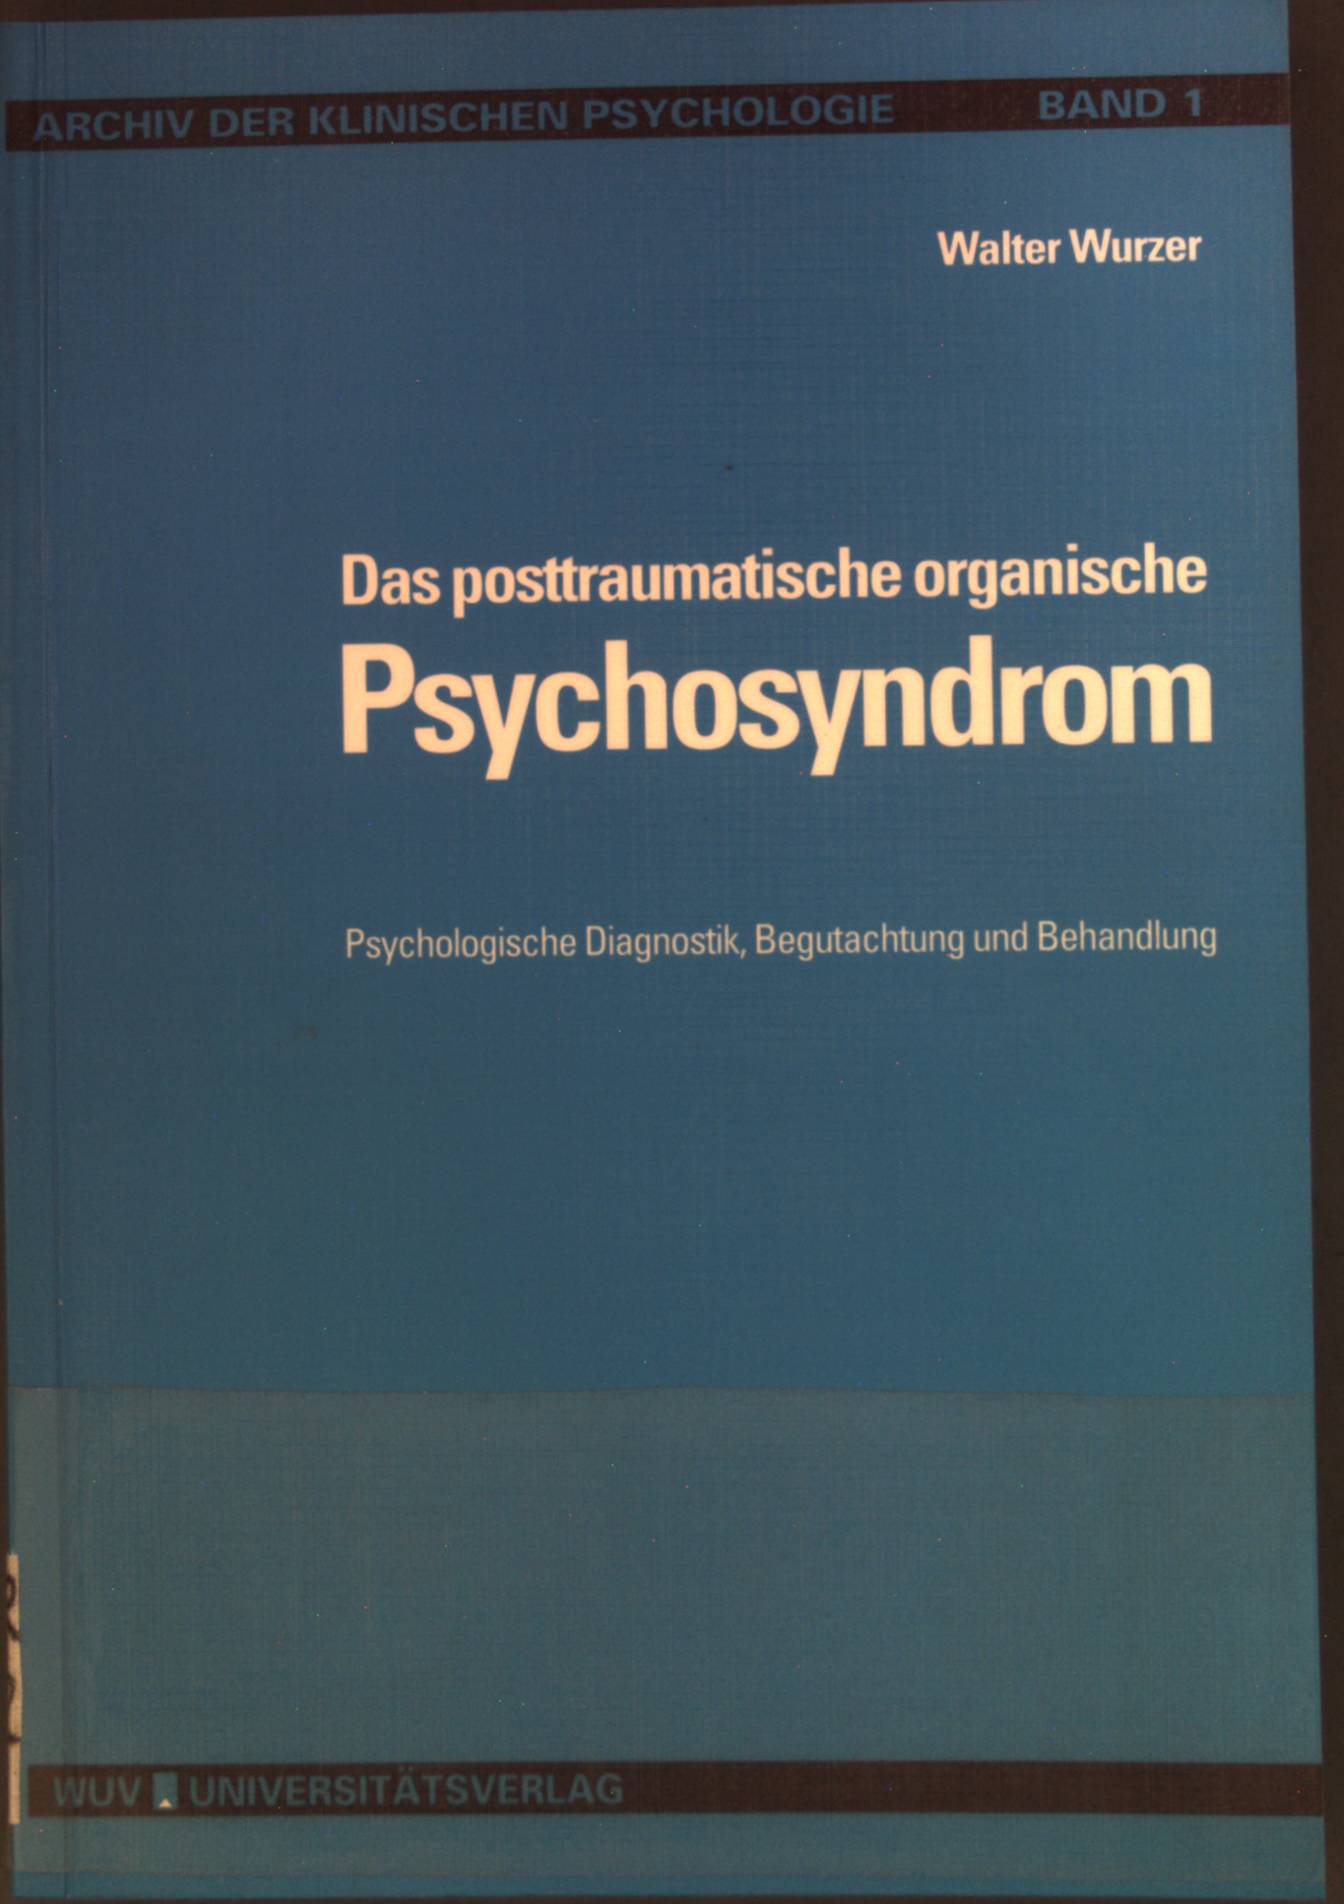 Das posttraumatische organische Psychosyndrom : psychologische Diagnostik, Begutachtung und Behandlung. Archiv der klinischen Psychologie ; Bd. 1 - Wurzer, Walter